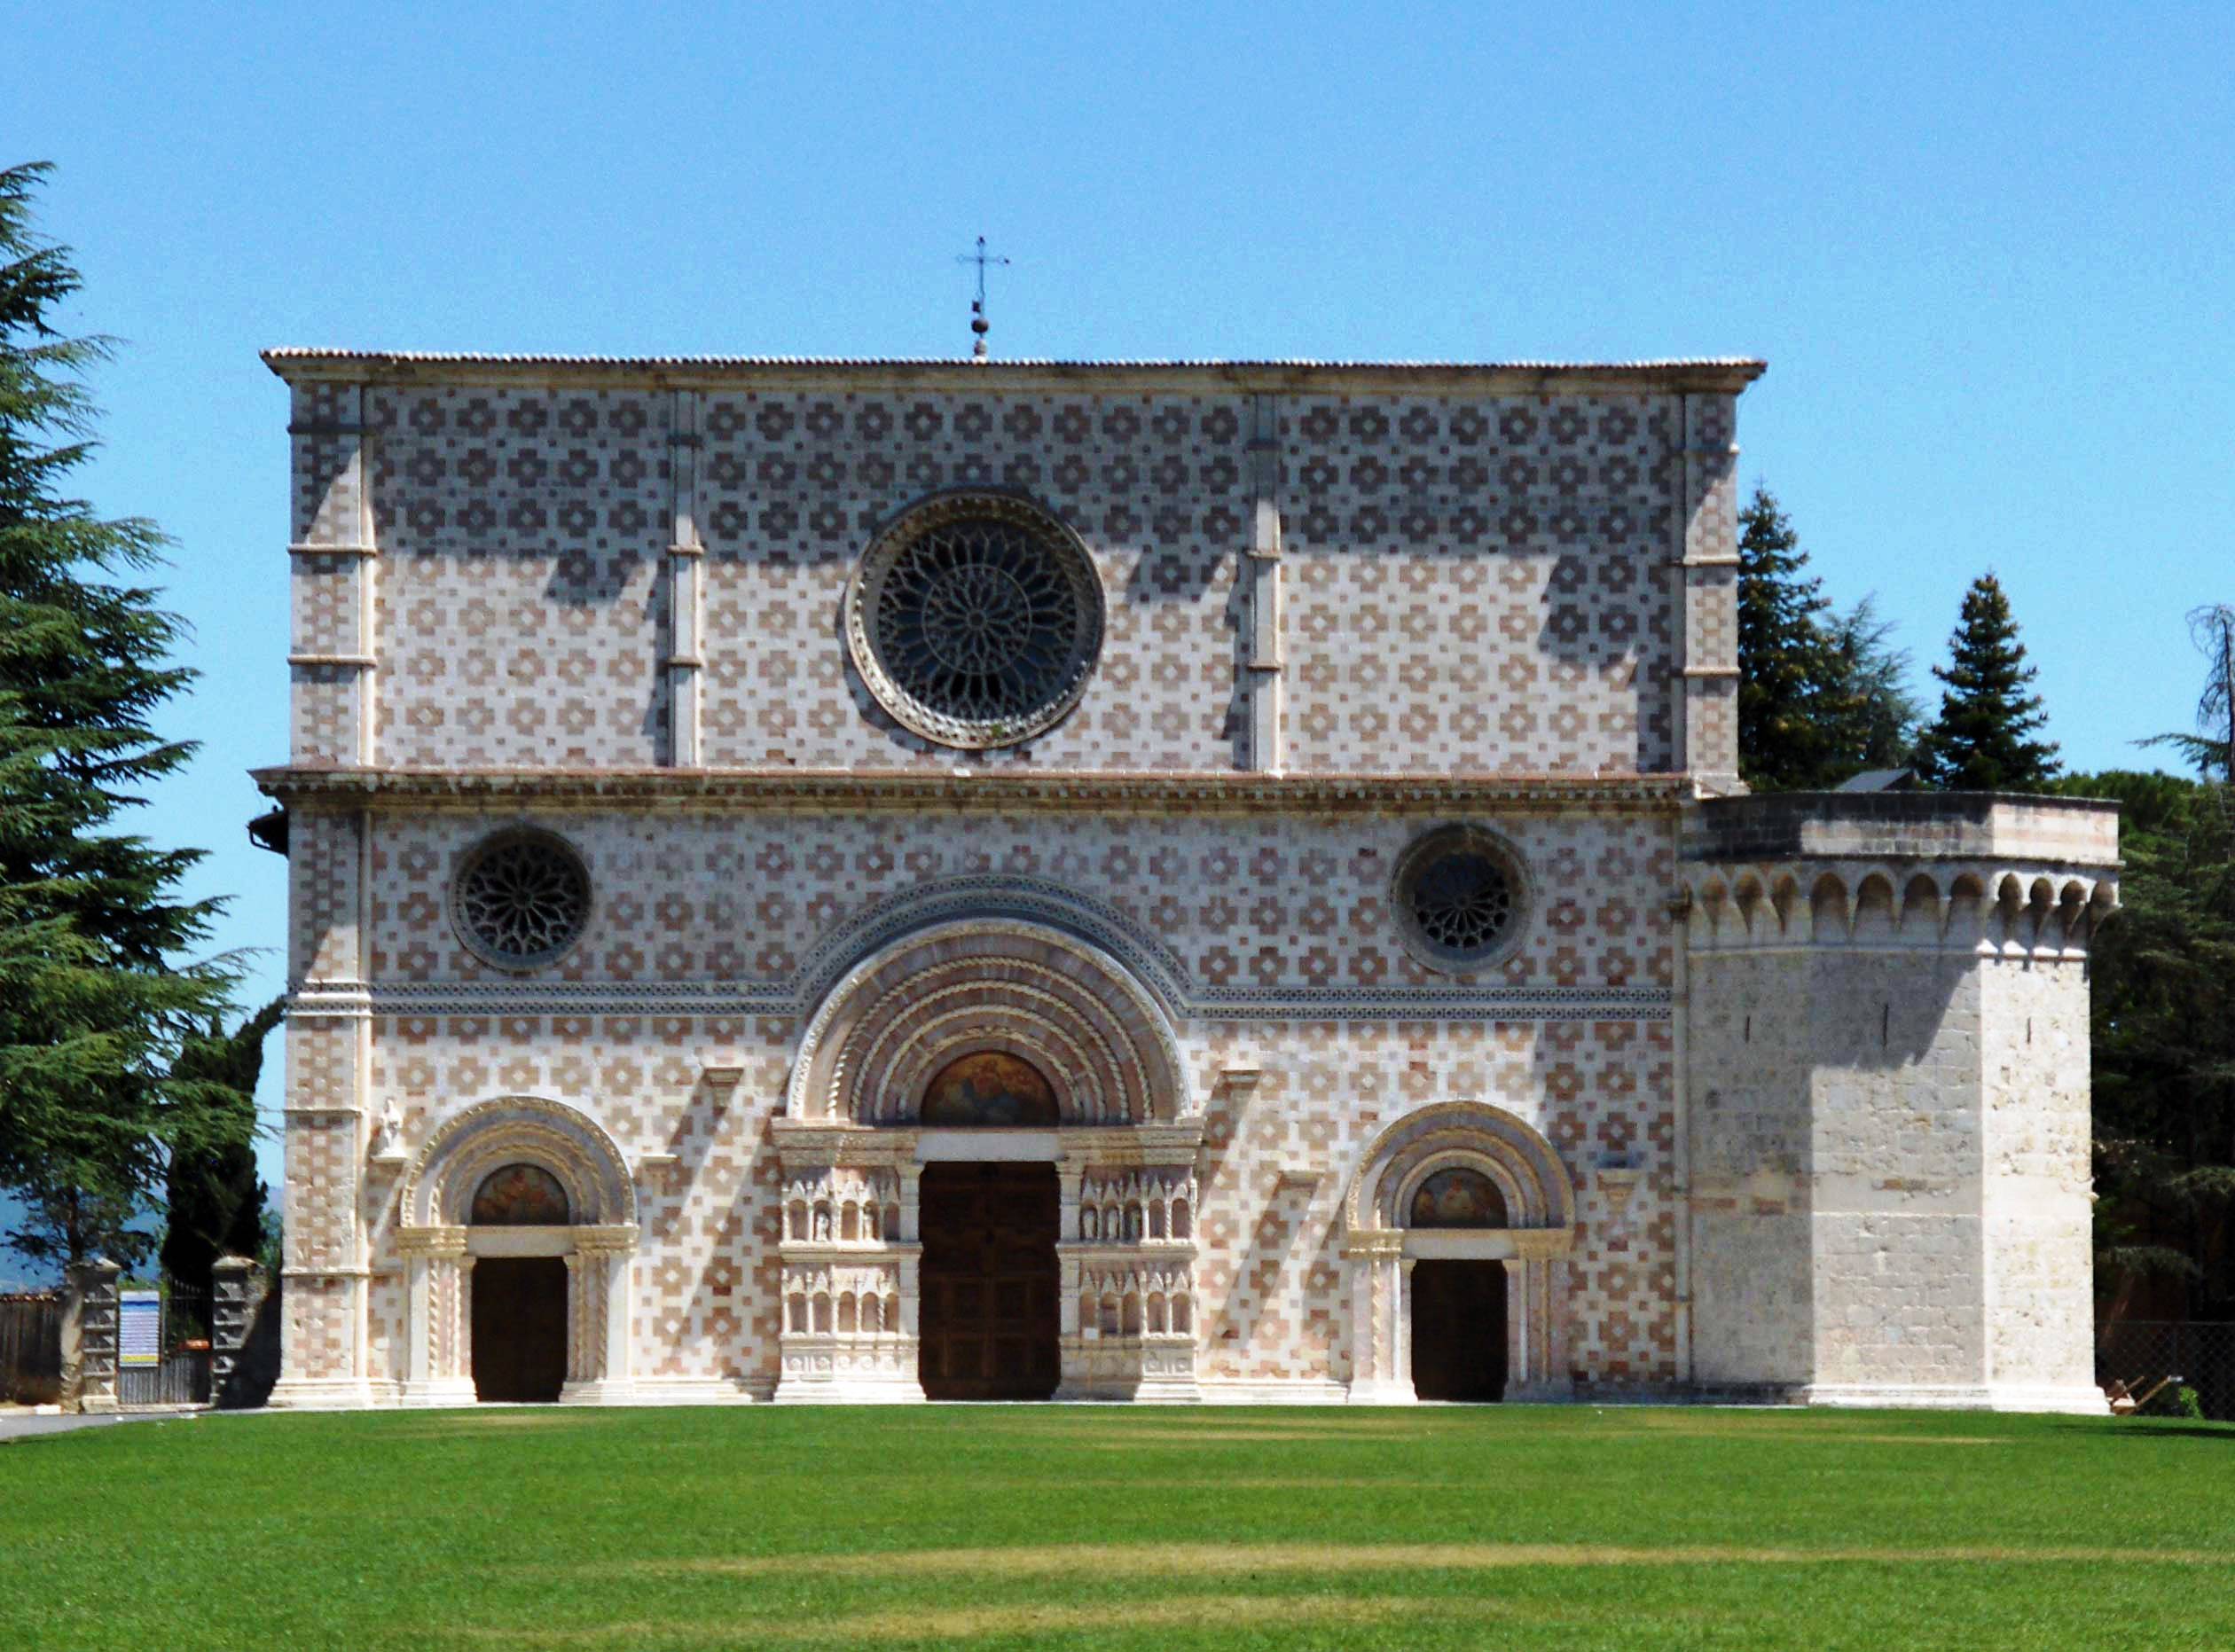 La basilica di Collemaggio